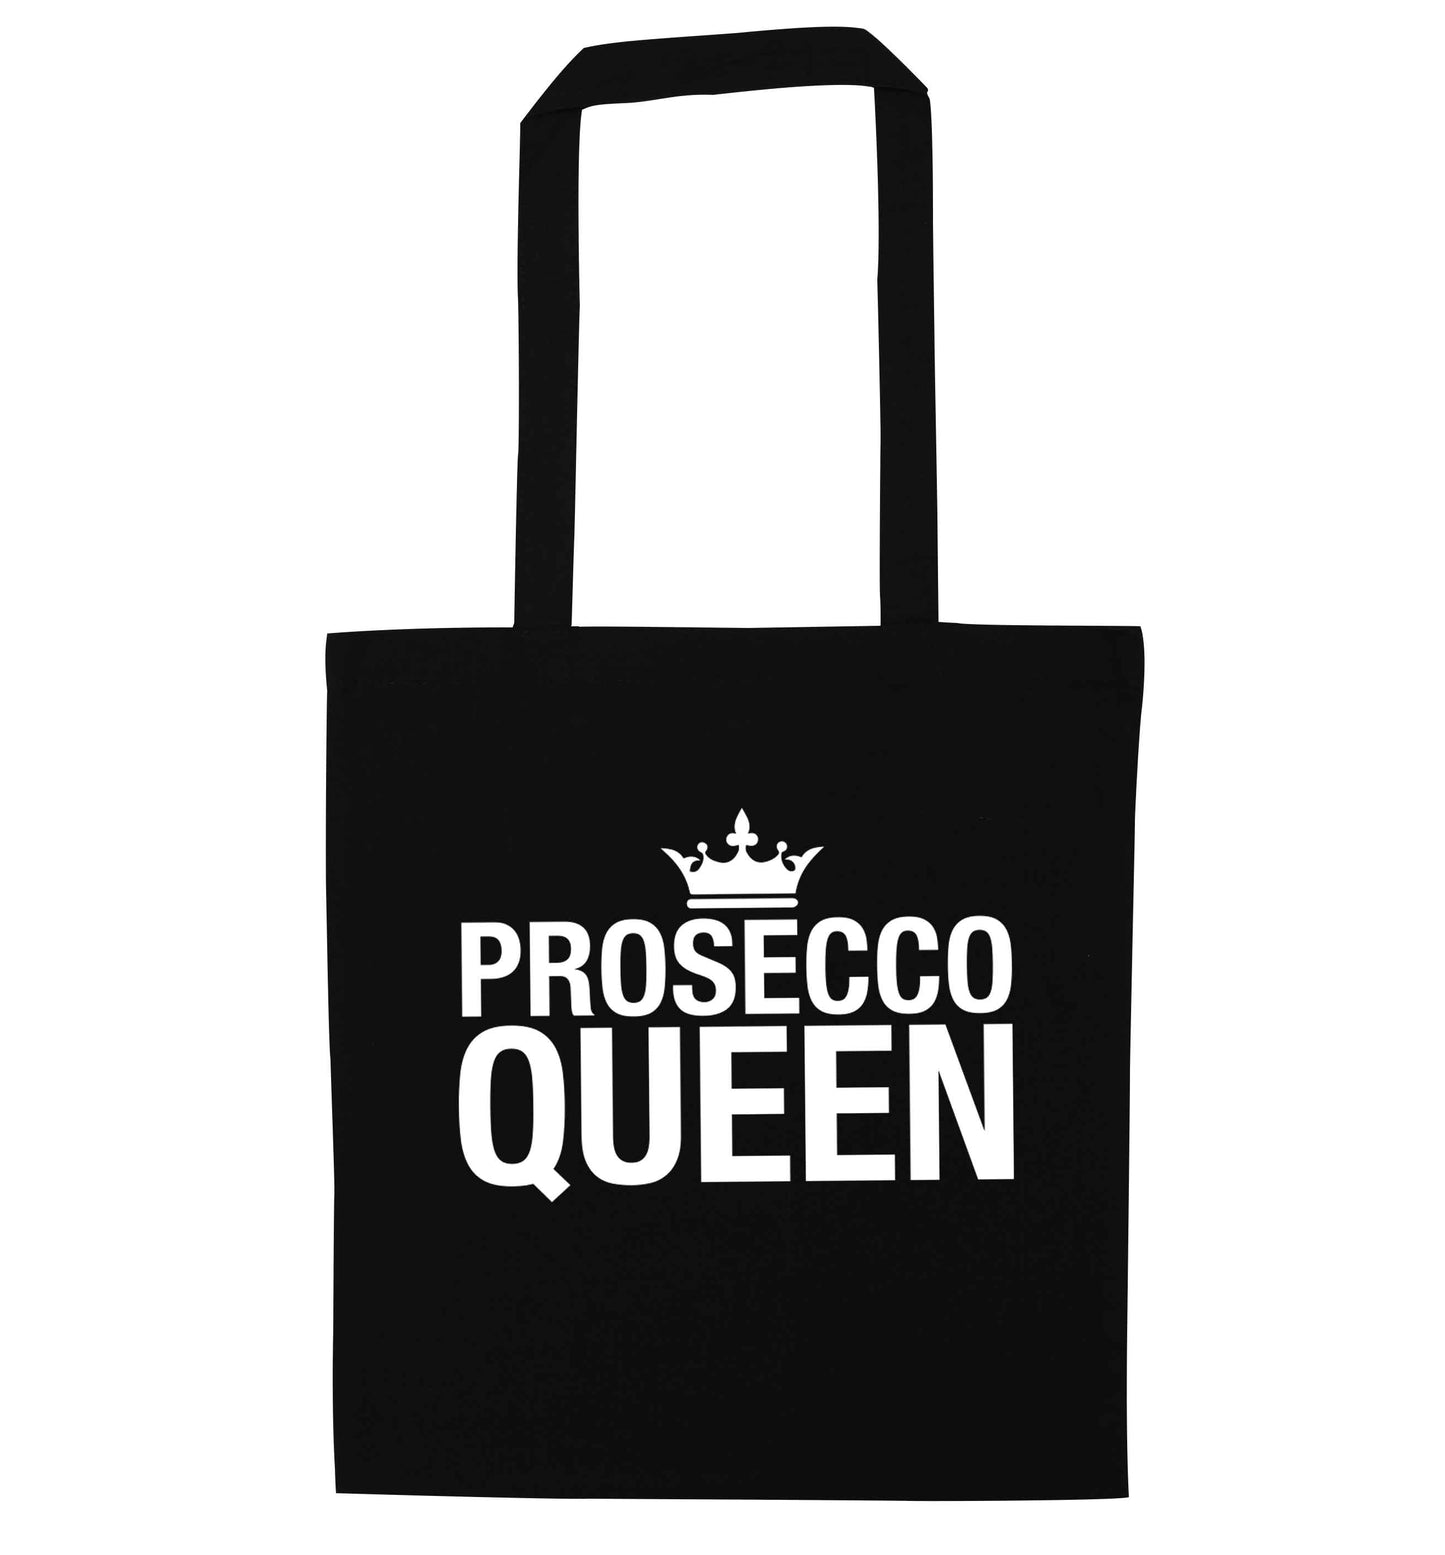 Prosecco queen black tote bag